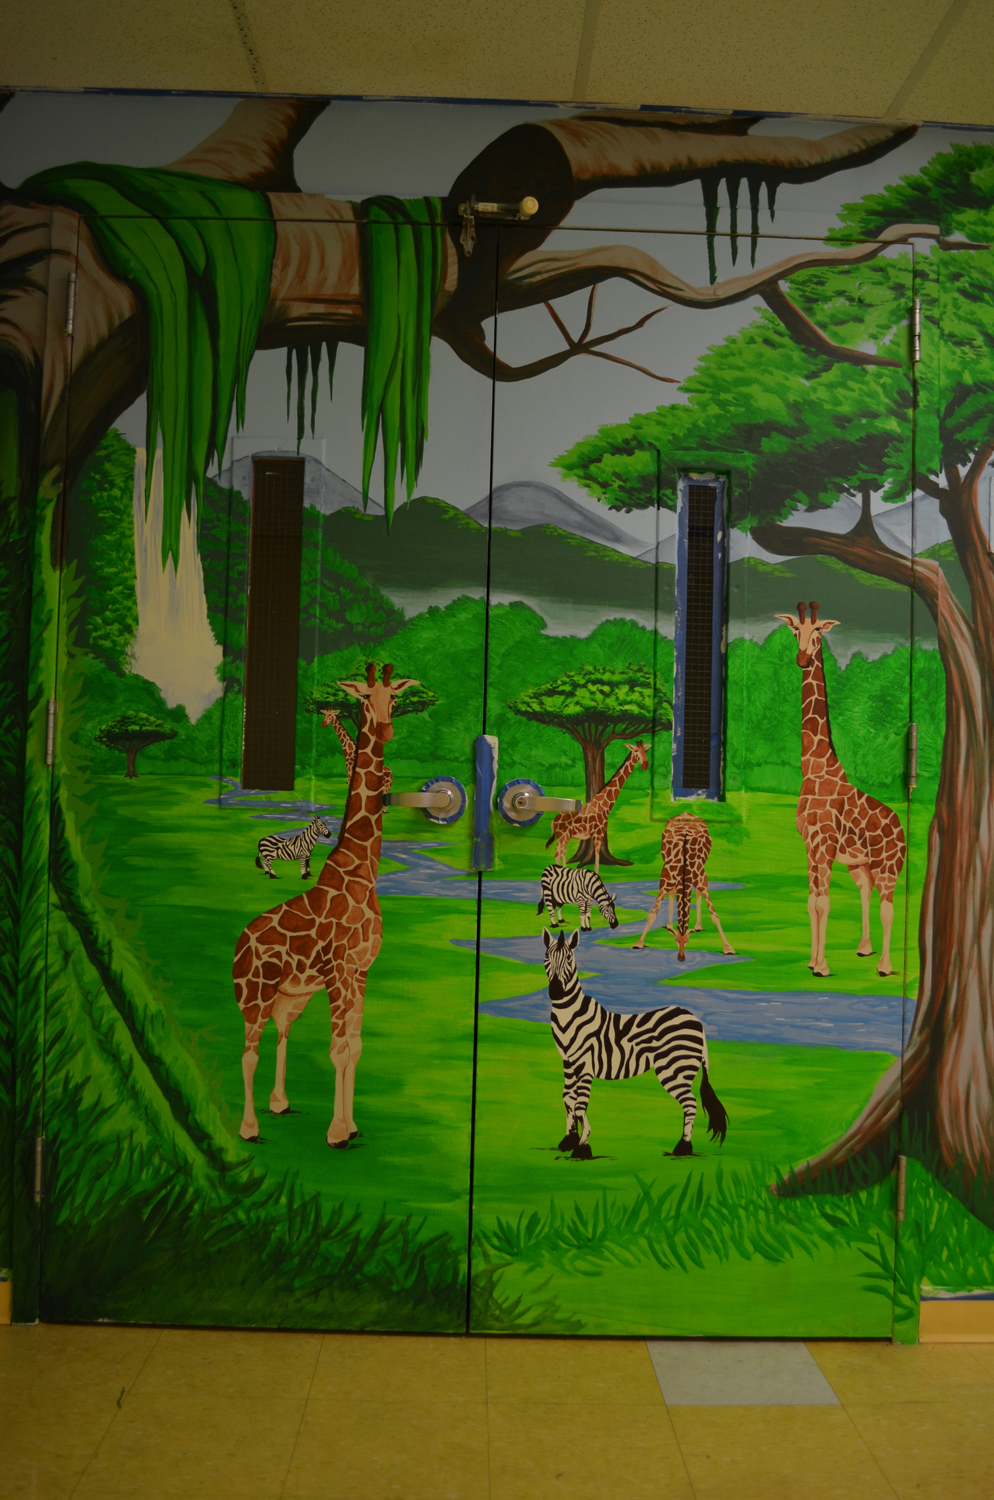 Giraffe and Zebra_1.jpg